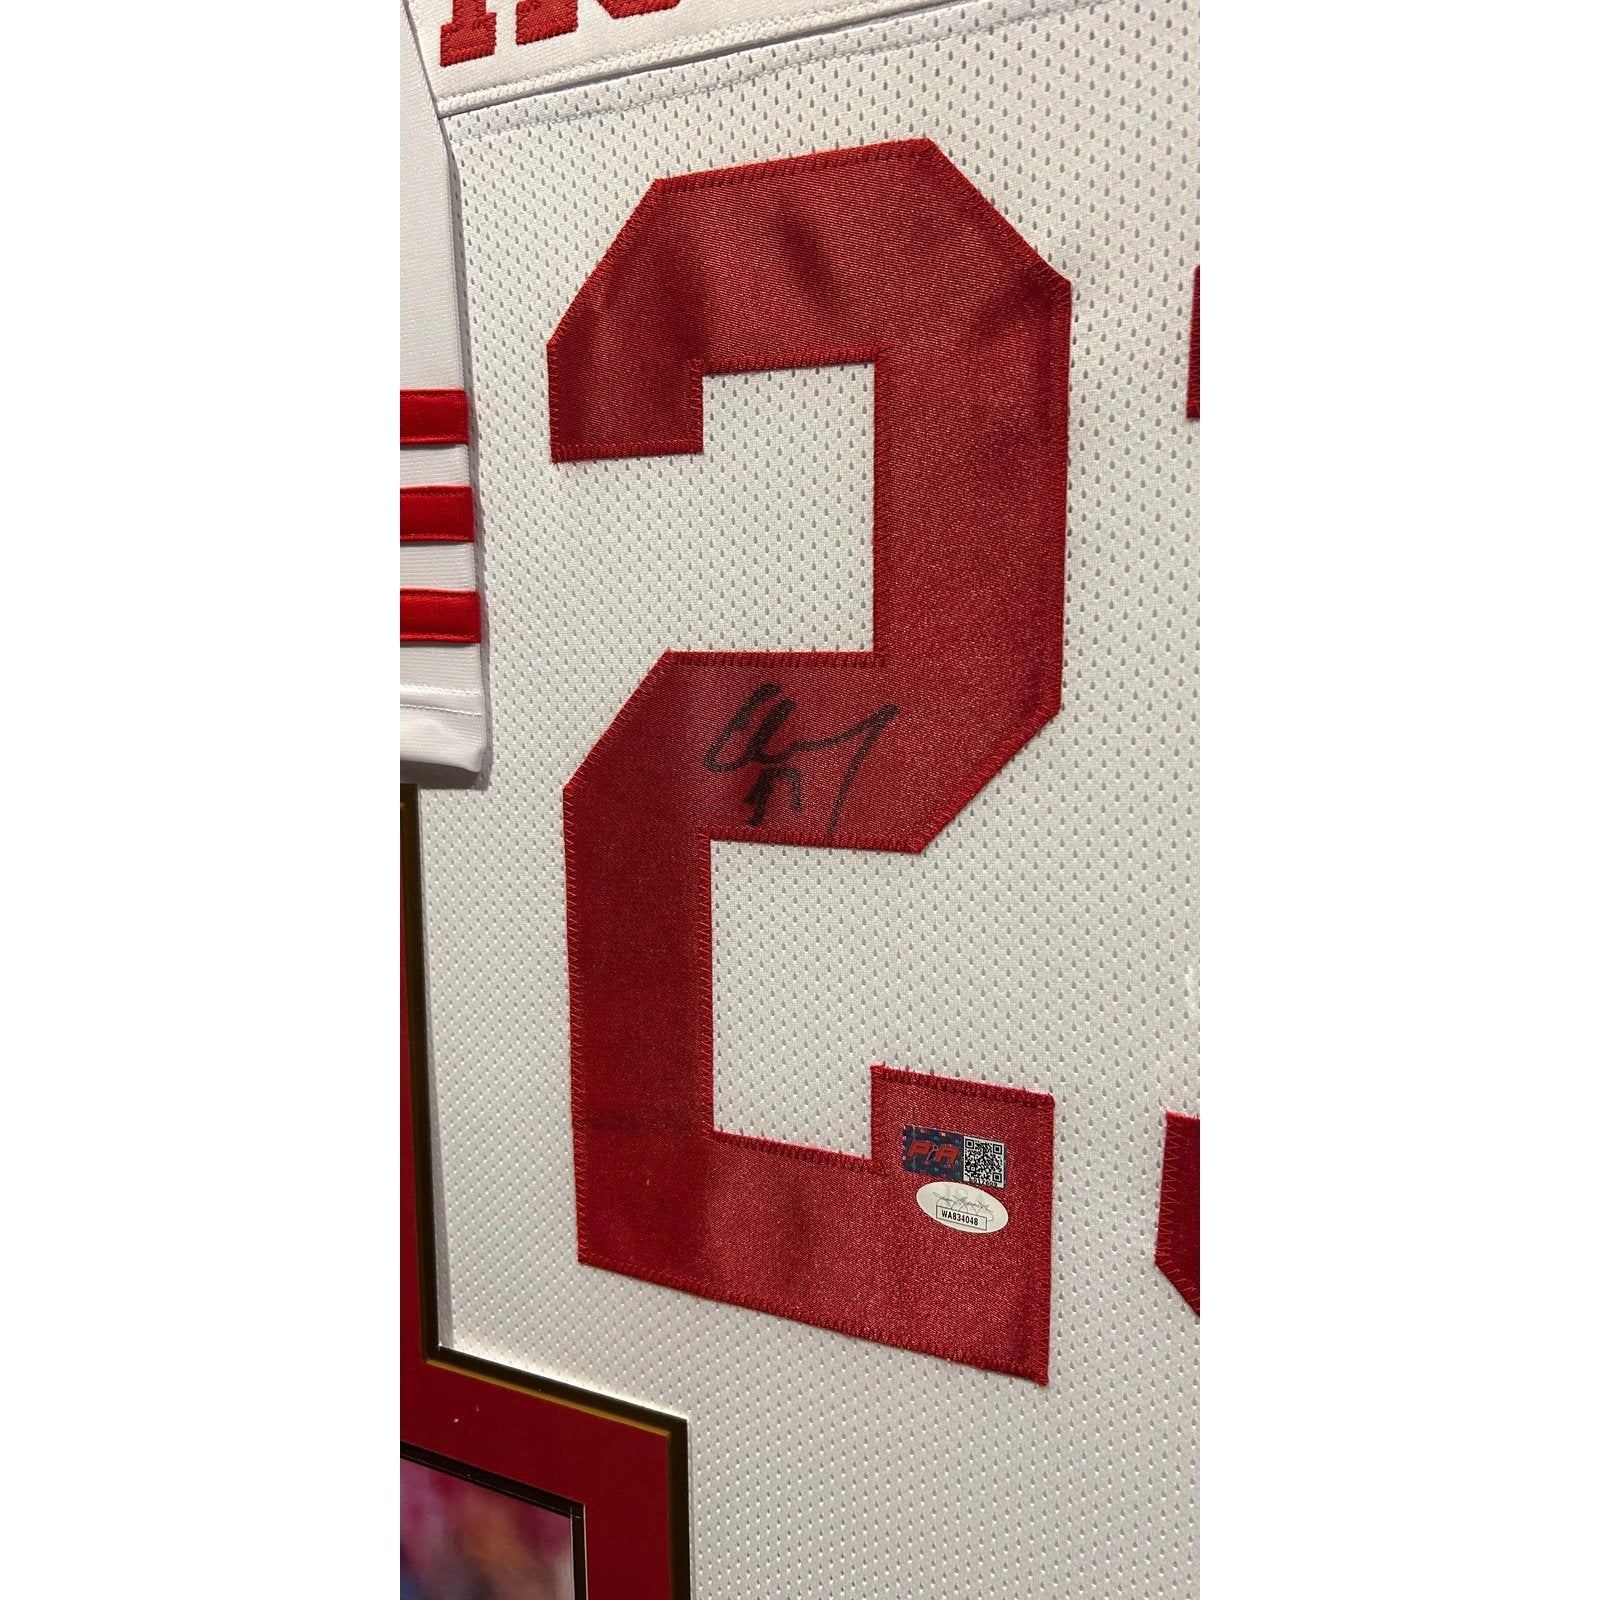 Christian McCaffrey Signed Framed Jersey JSA Autographed San Francisco 49ers